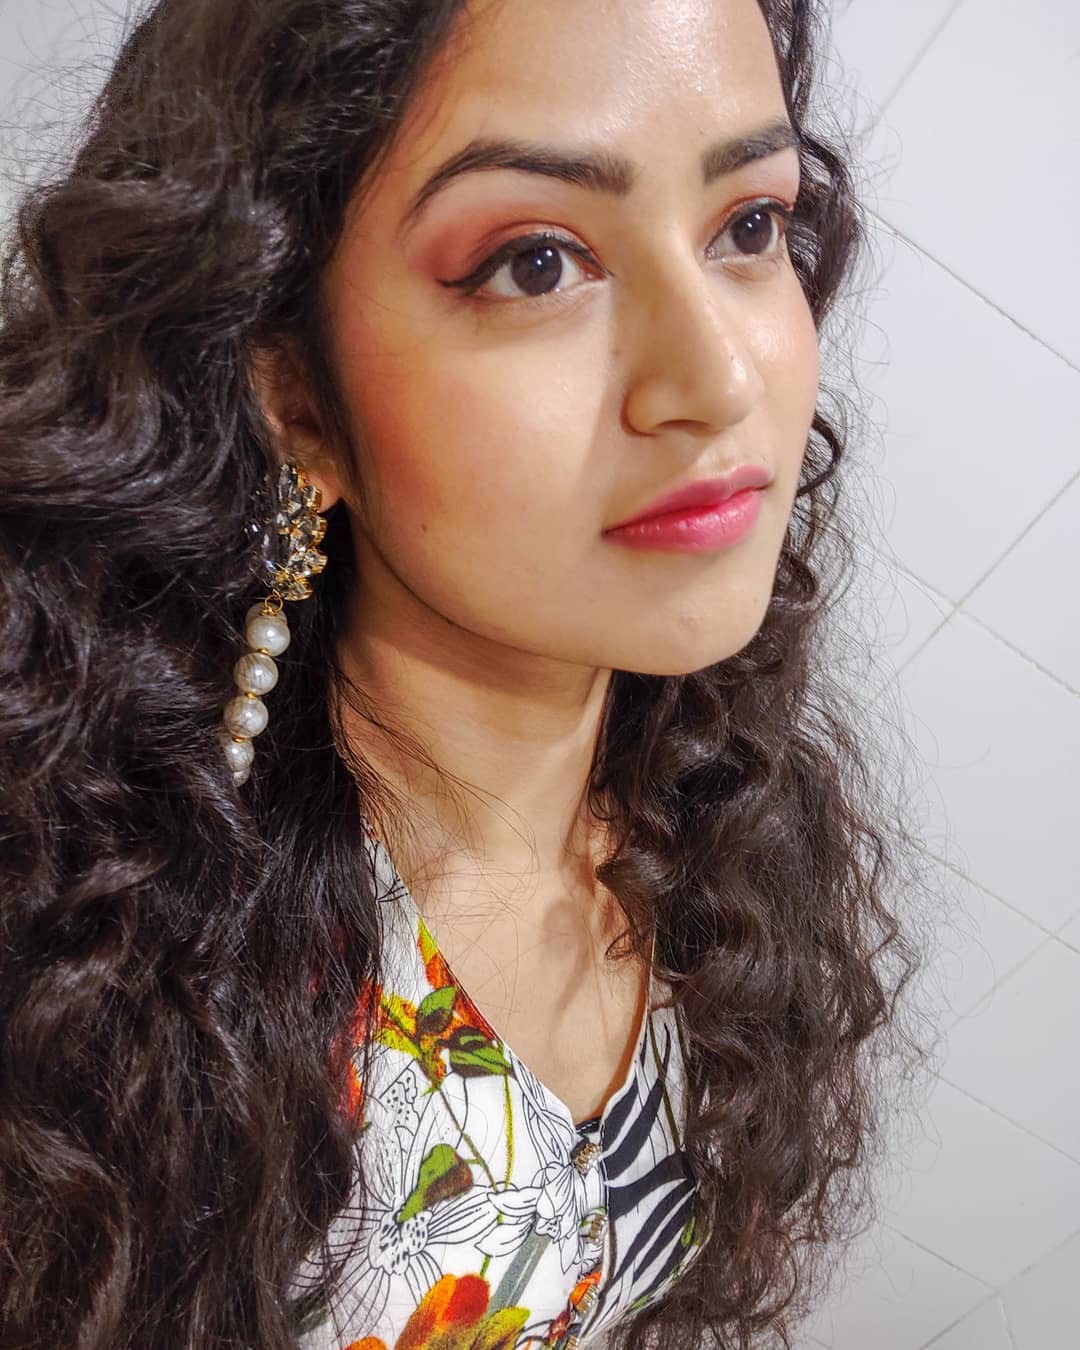 Farhina Parvez Jarimari Instagram, Hair coloring y Long hair: Pelo largo,  Ideas para teñir el cabello,  Sesión de fotos,  Farhina Parvez Jarimari  